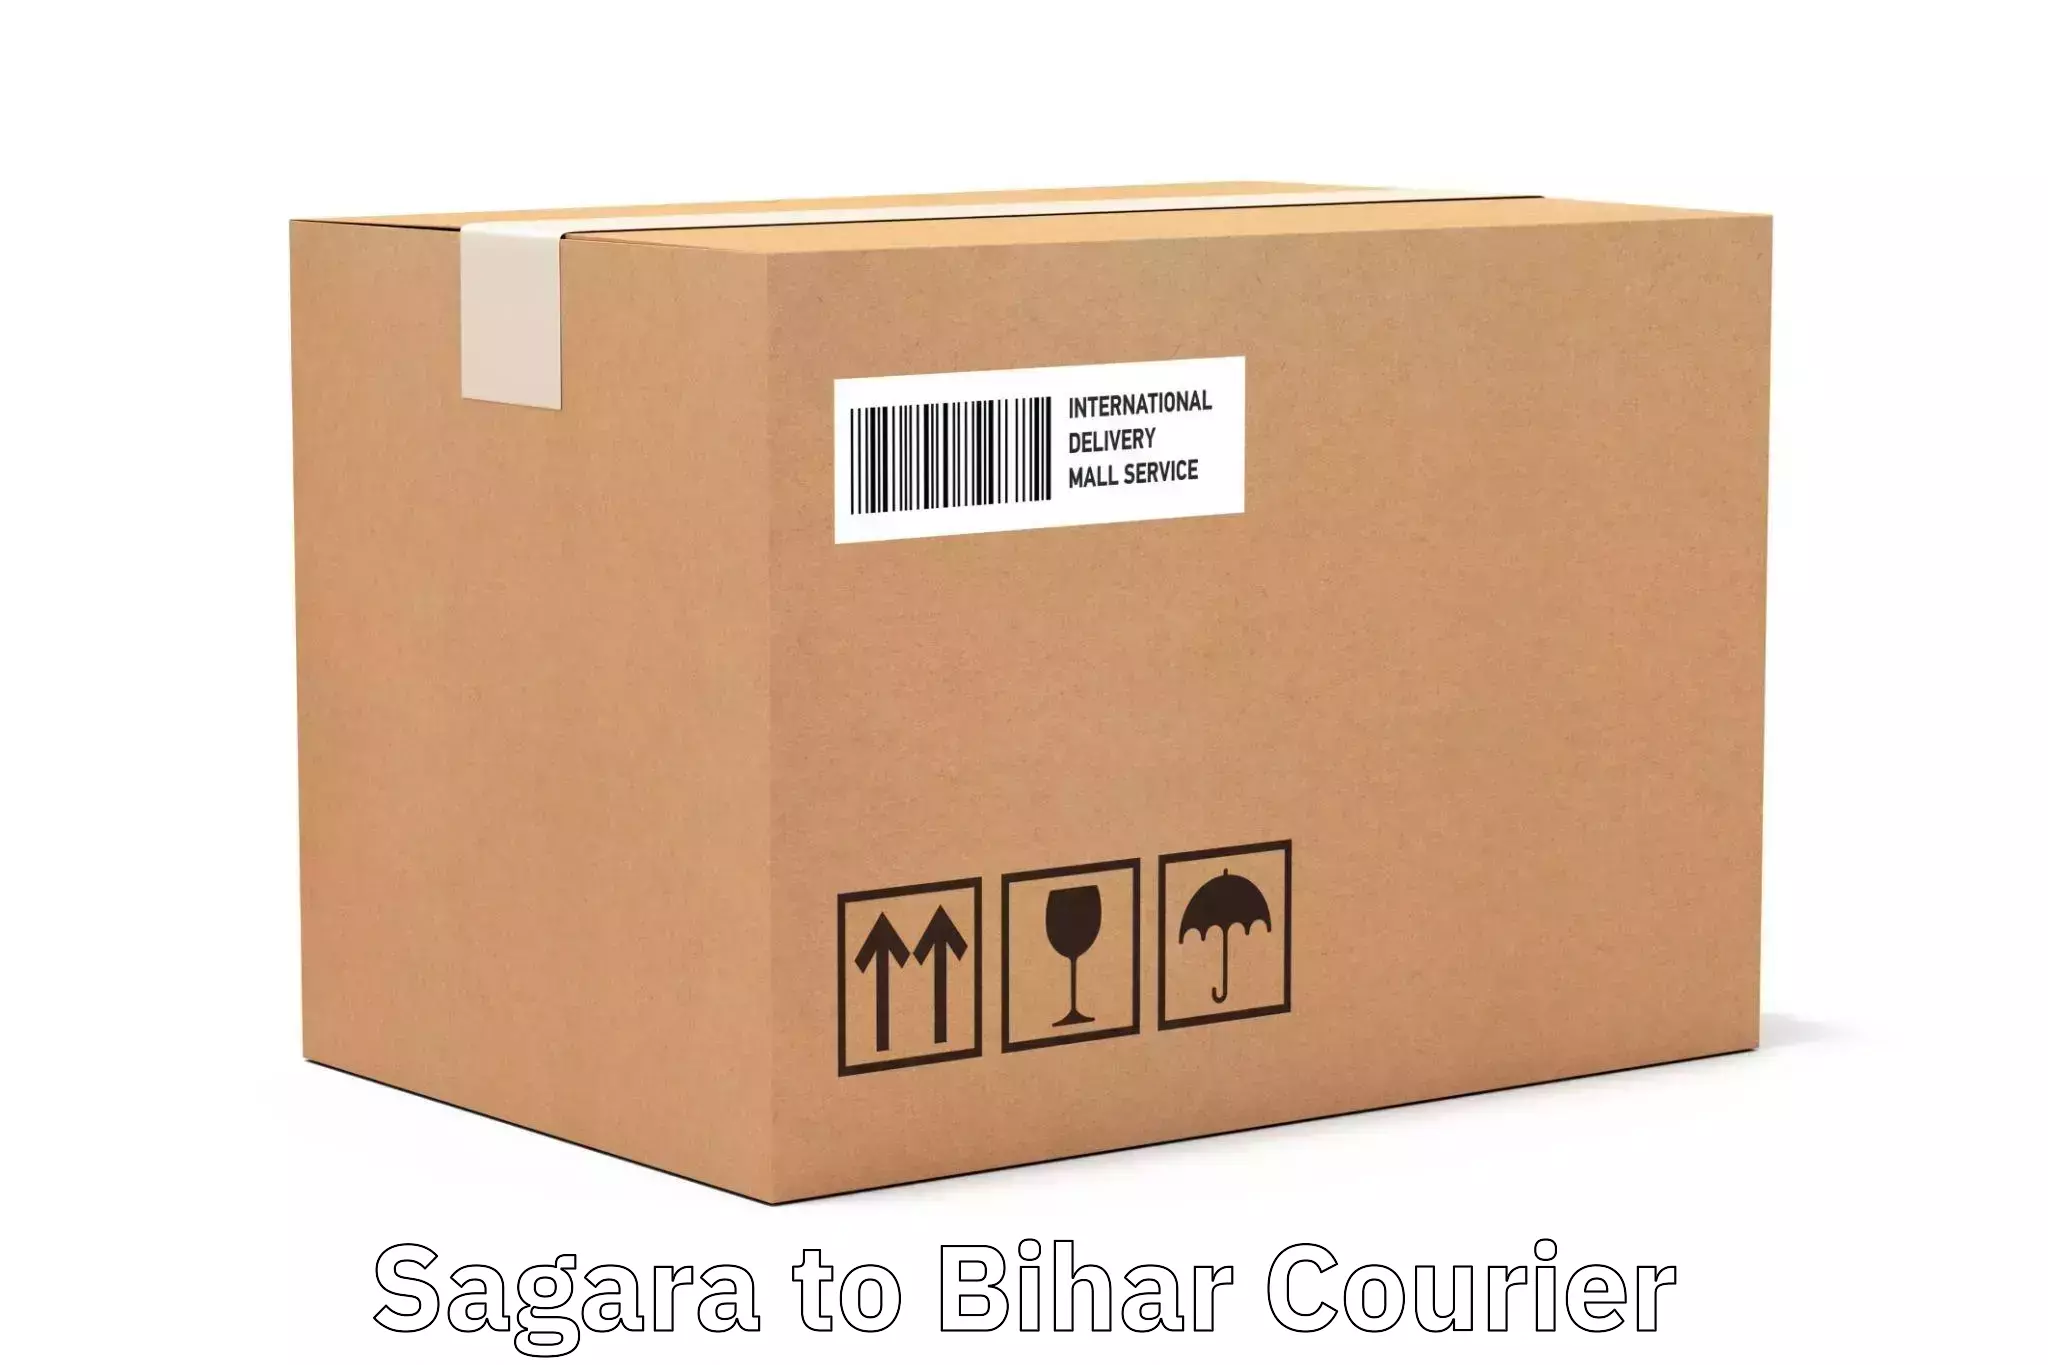 Regular parcel service Sagara to Bihar